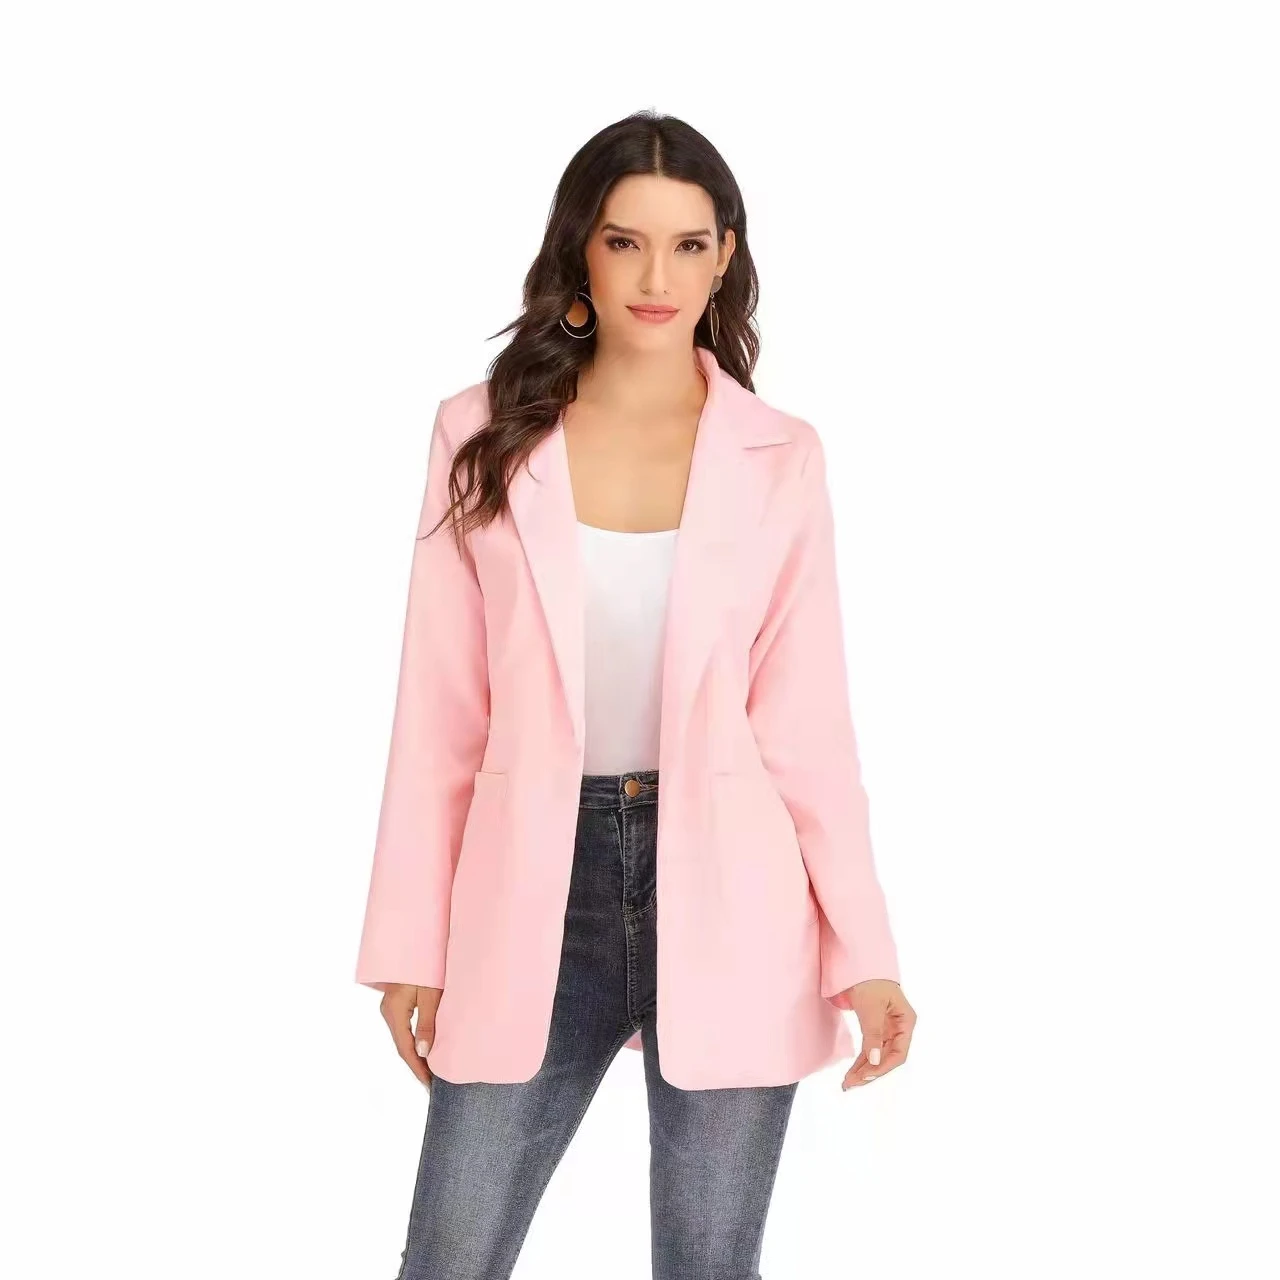 Women's Casual Lapel Blazer Suit Jacket Long Sleeve Slim Cardigan Coat Outwear